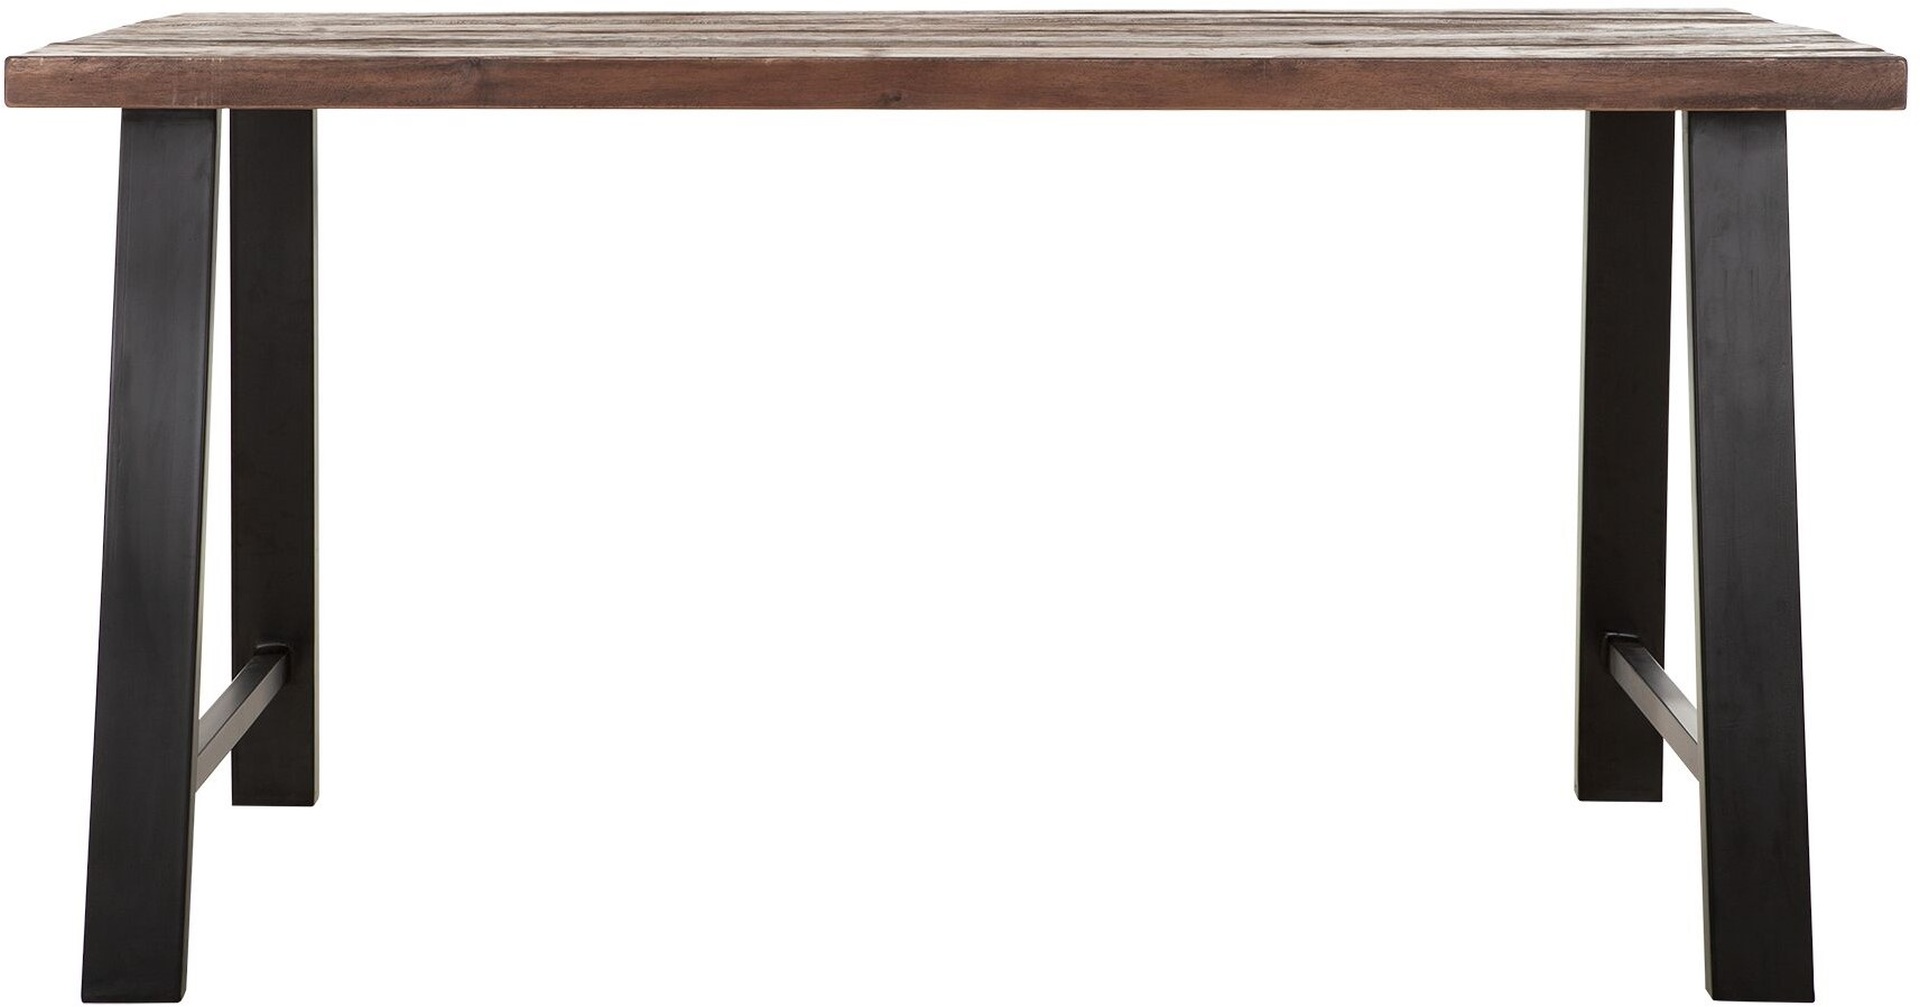 Der Esstisch Timber überzeugt mit seinem massivem aber auch modernem Design. Gefertigt wurde es aus verschiedenen Holzarten, welche einen natürlichen Farbton besitzen. Der Esstisch besitzt eine Länge von 150 cm.